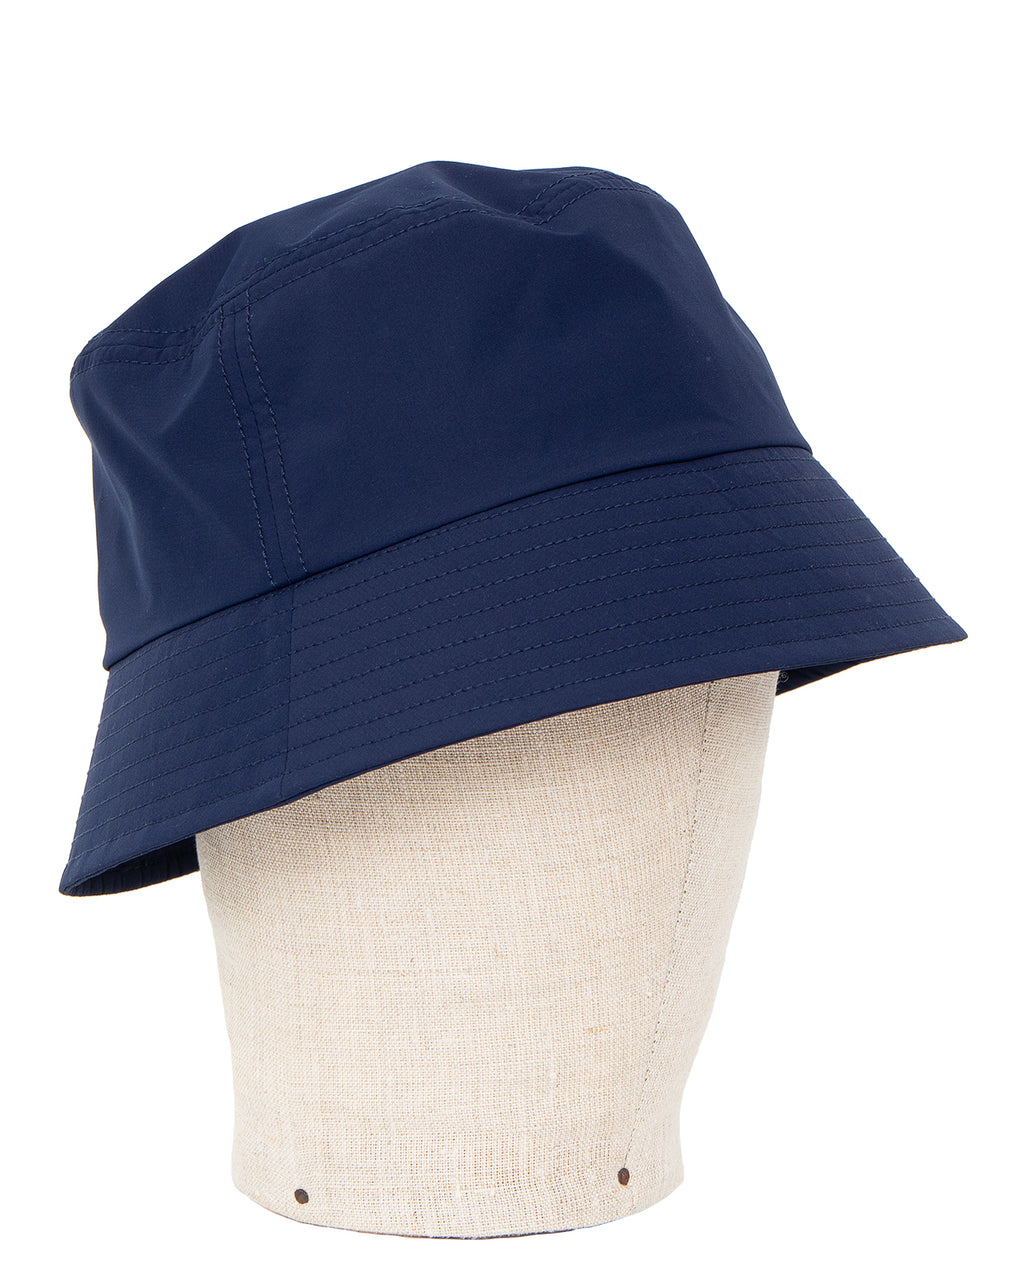 Daiwa Pier39 GORE-TEX Windstopper Tech Bucket Hat, Mid Navy